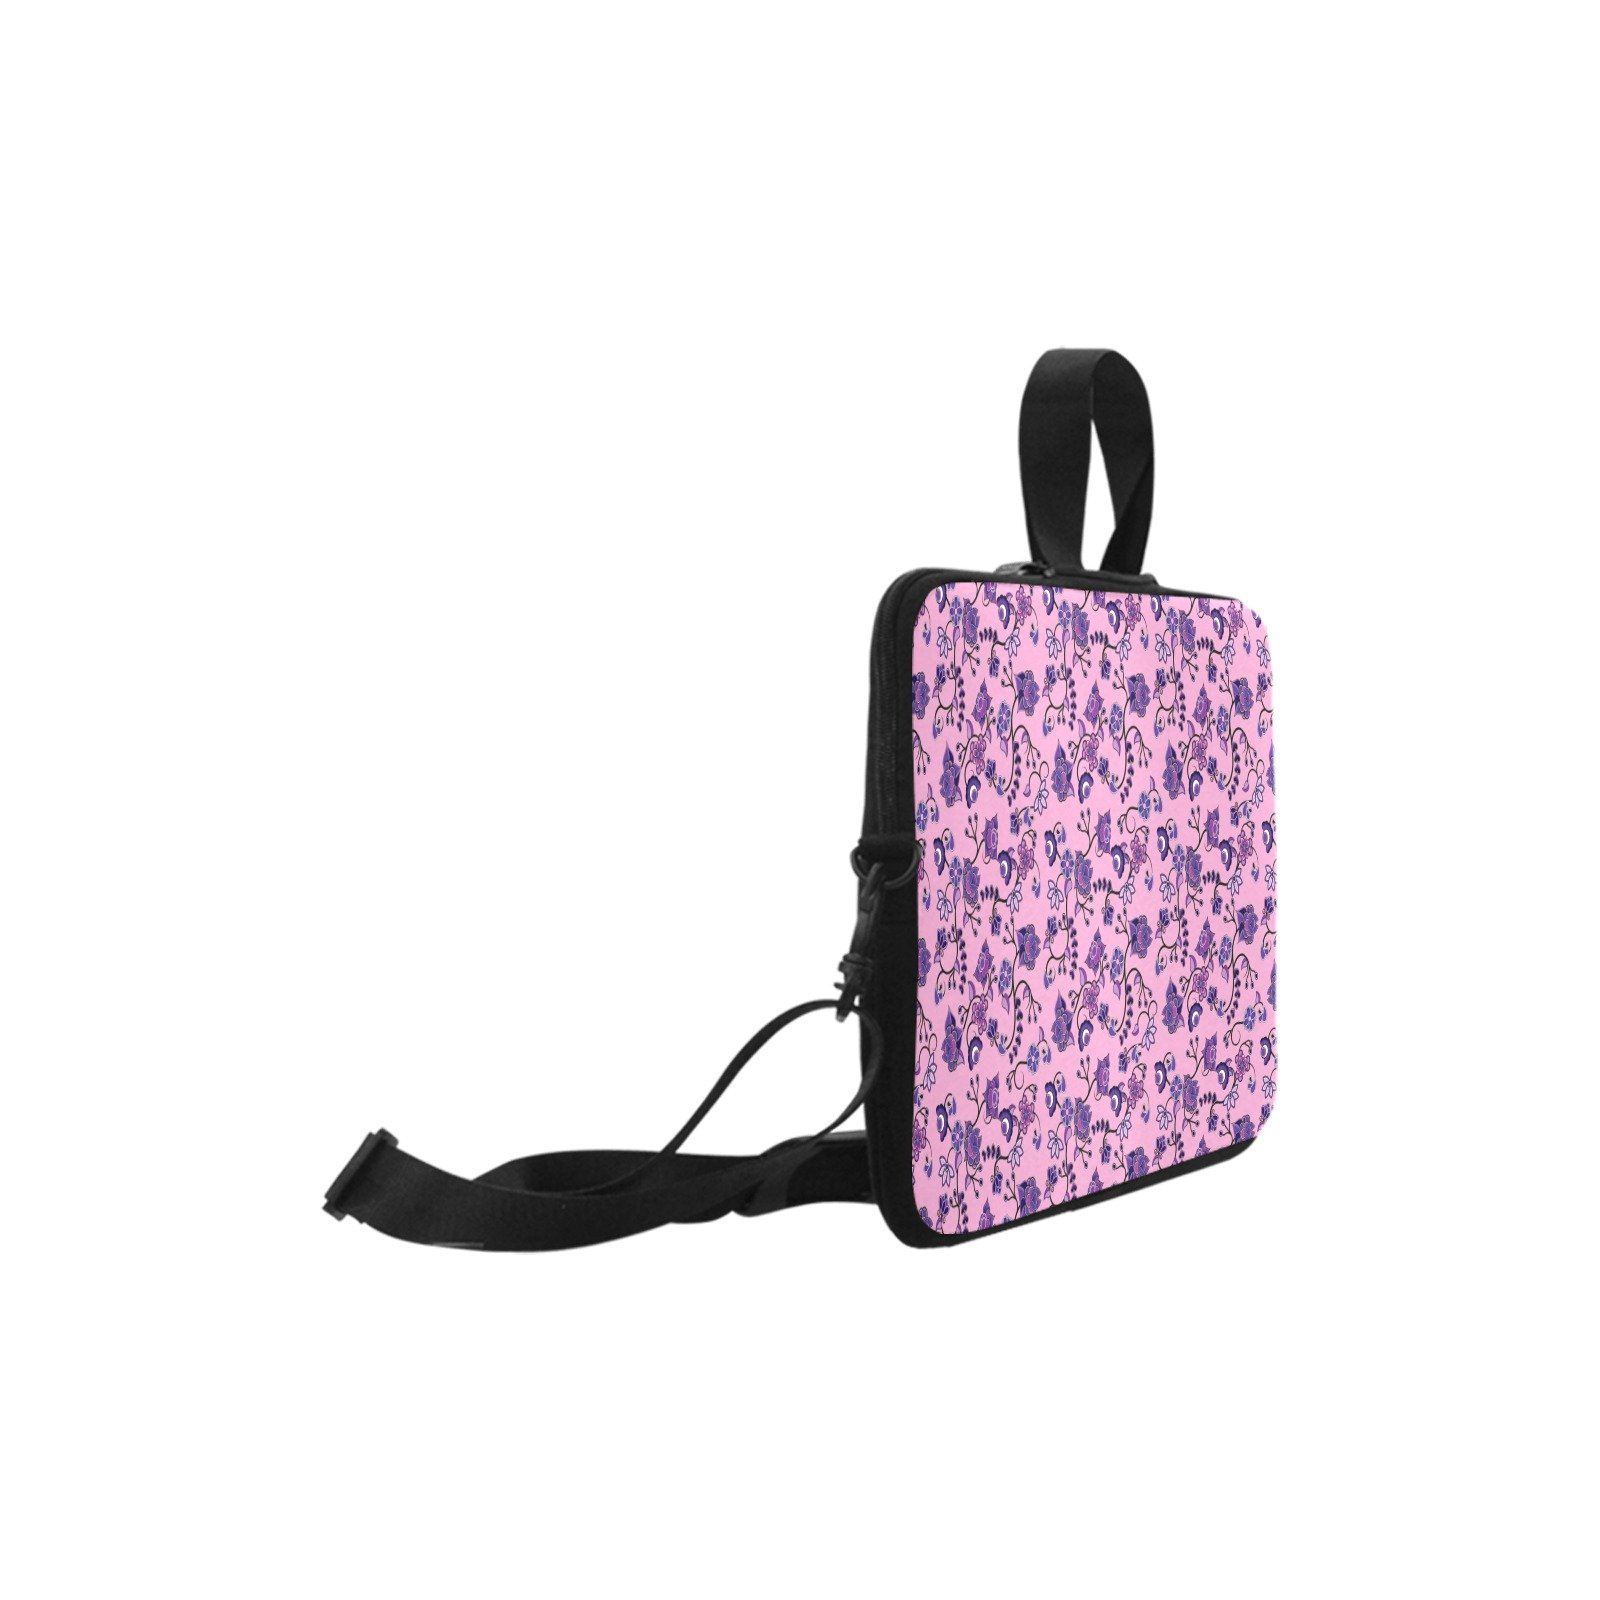 Purple Floral Amour Laptop Handbags 11" bag e-joyer 